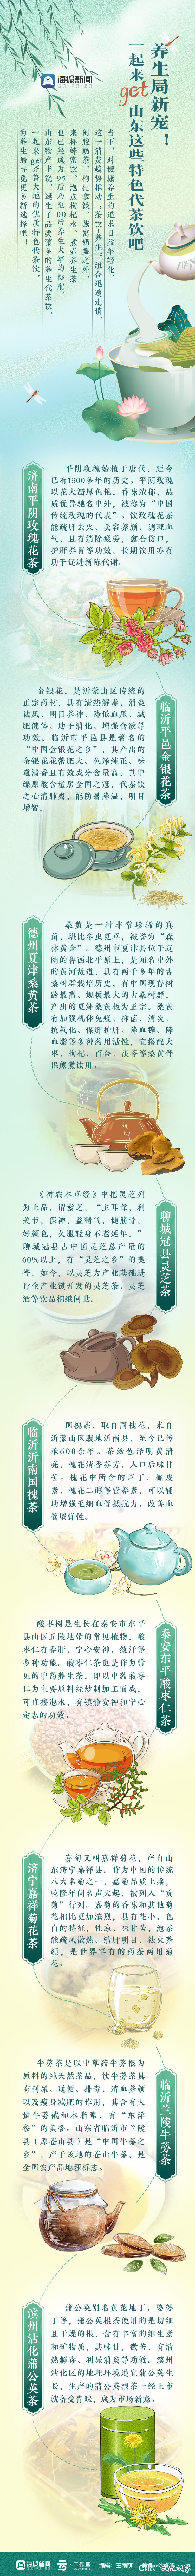 桑黄茶、灵芝茶、国槐茶、牛蒡茶……你喝过山东这些特色养生代茶饮吗？